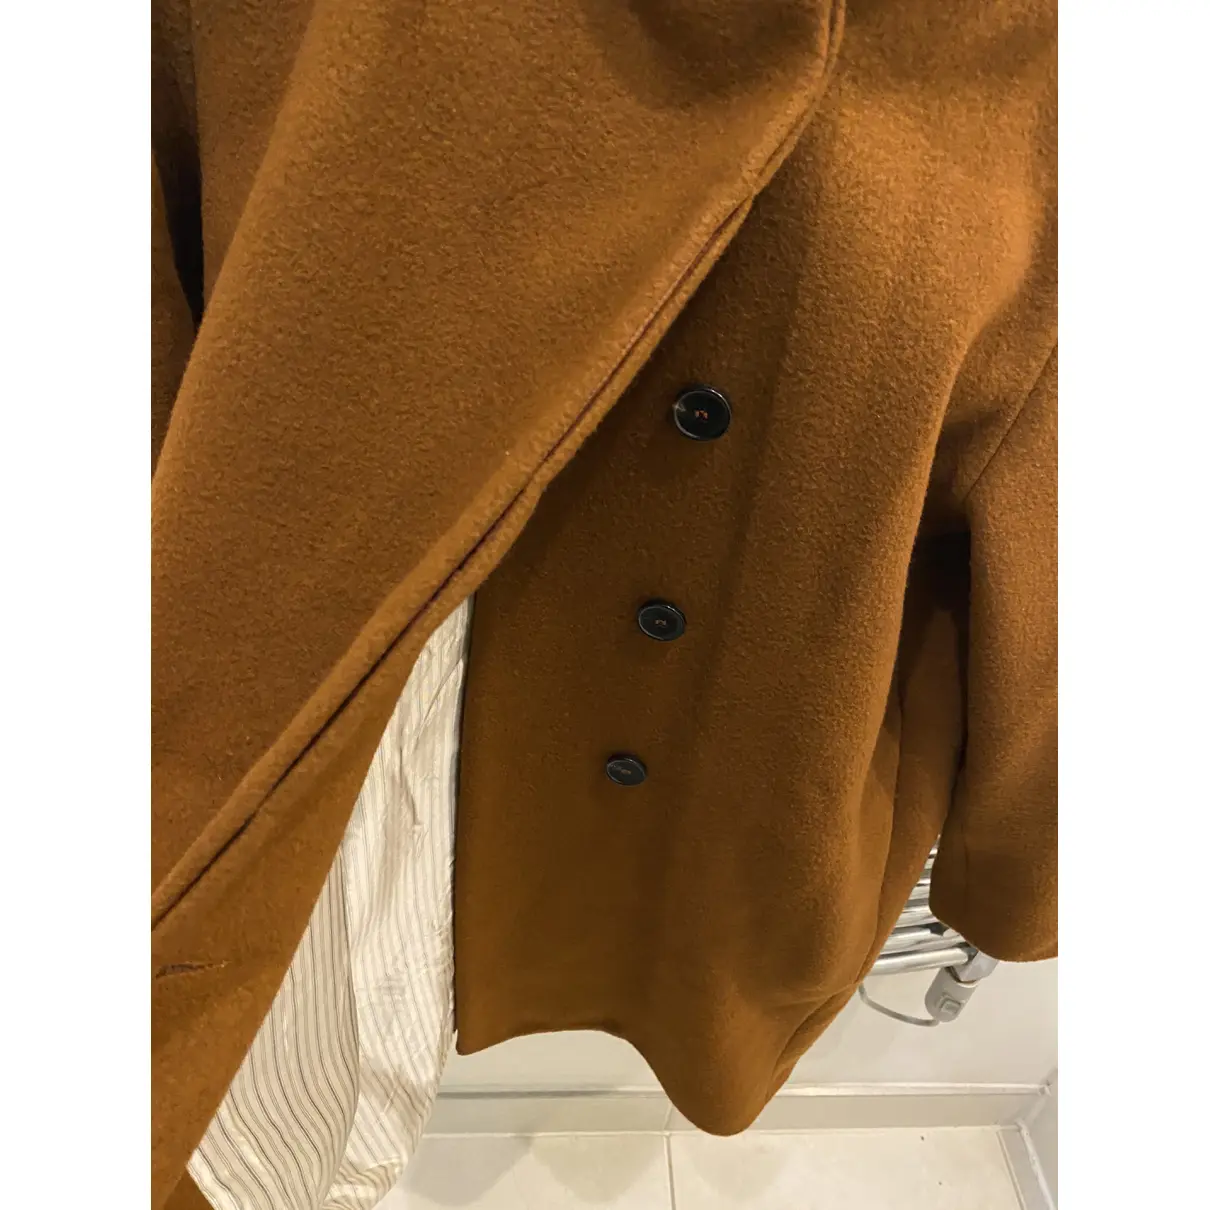 Buy Vanessa Bruno Wool coat online